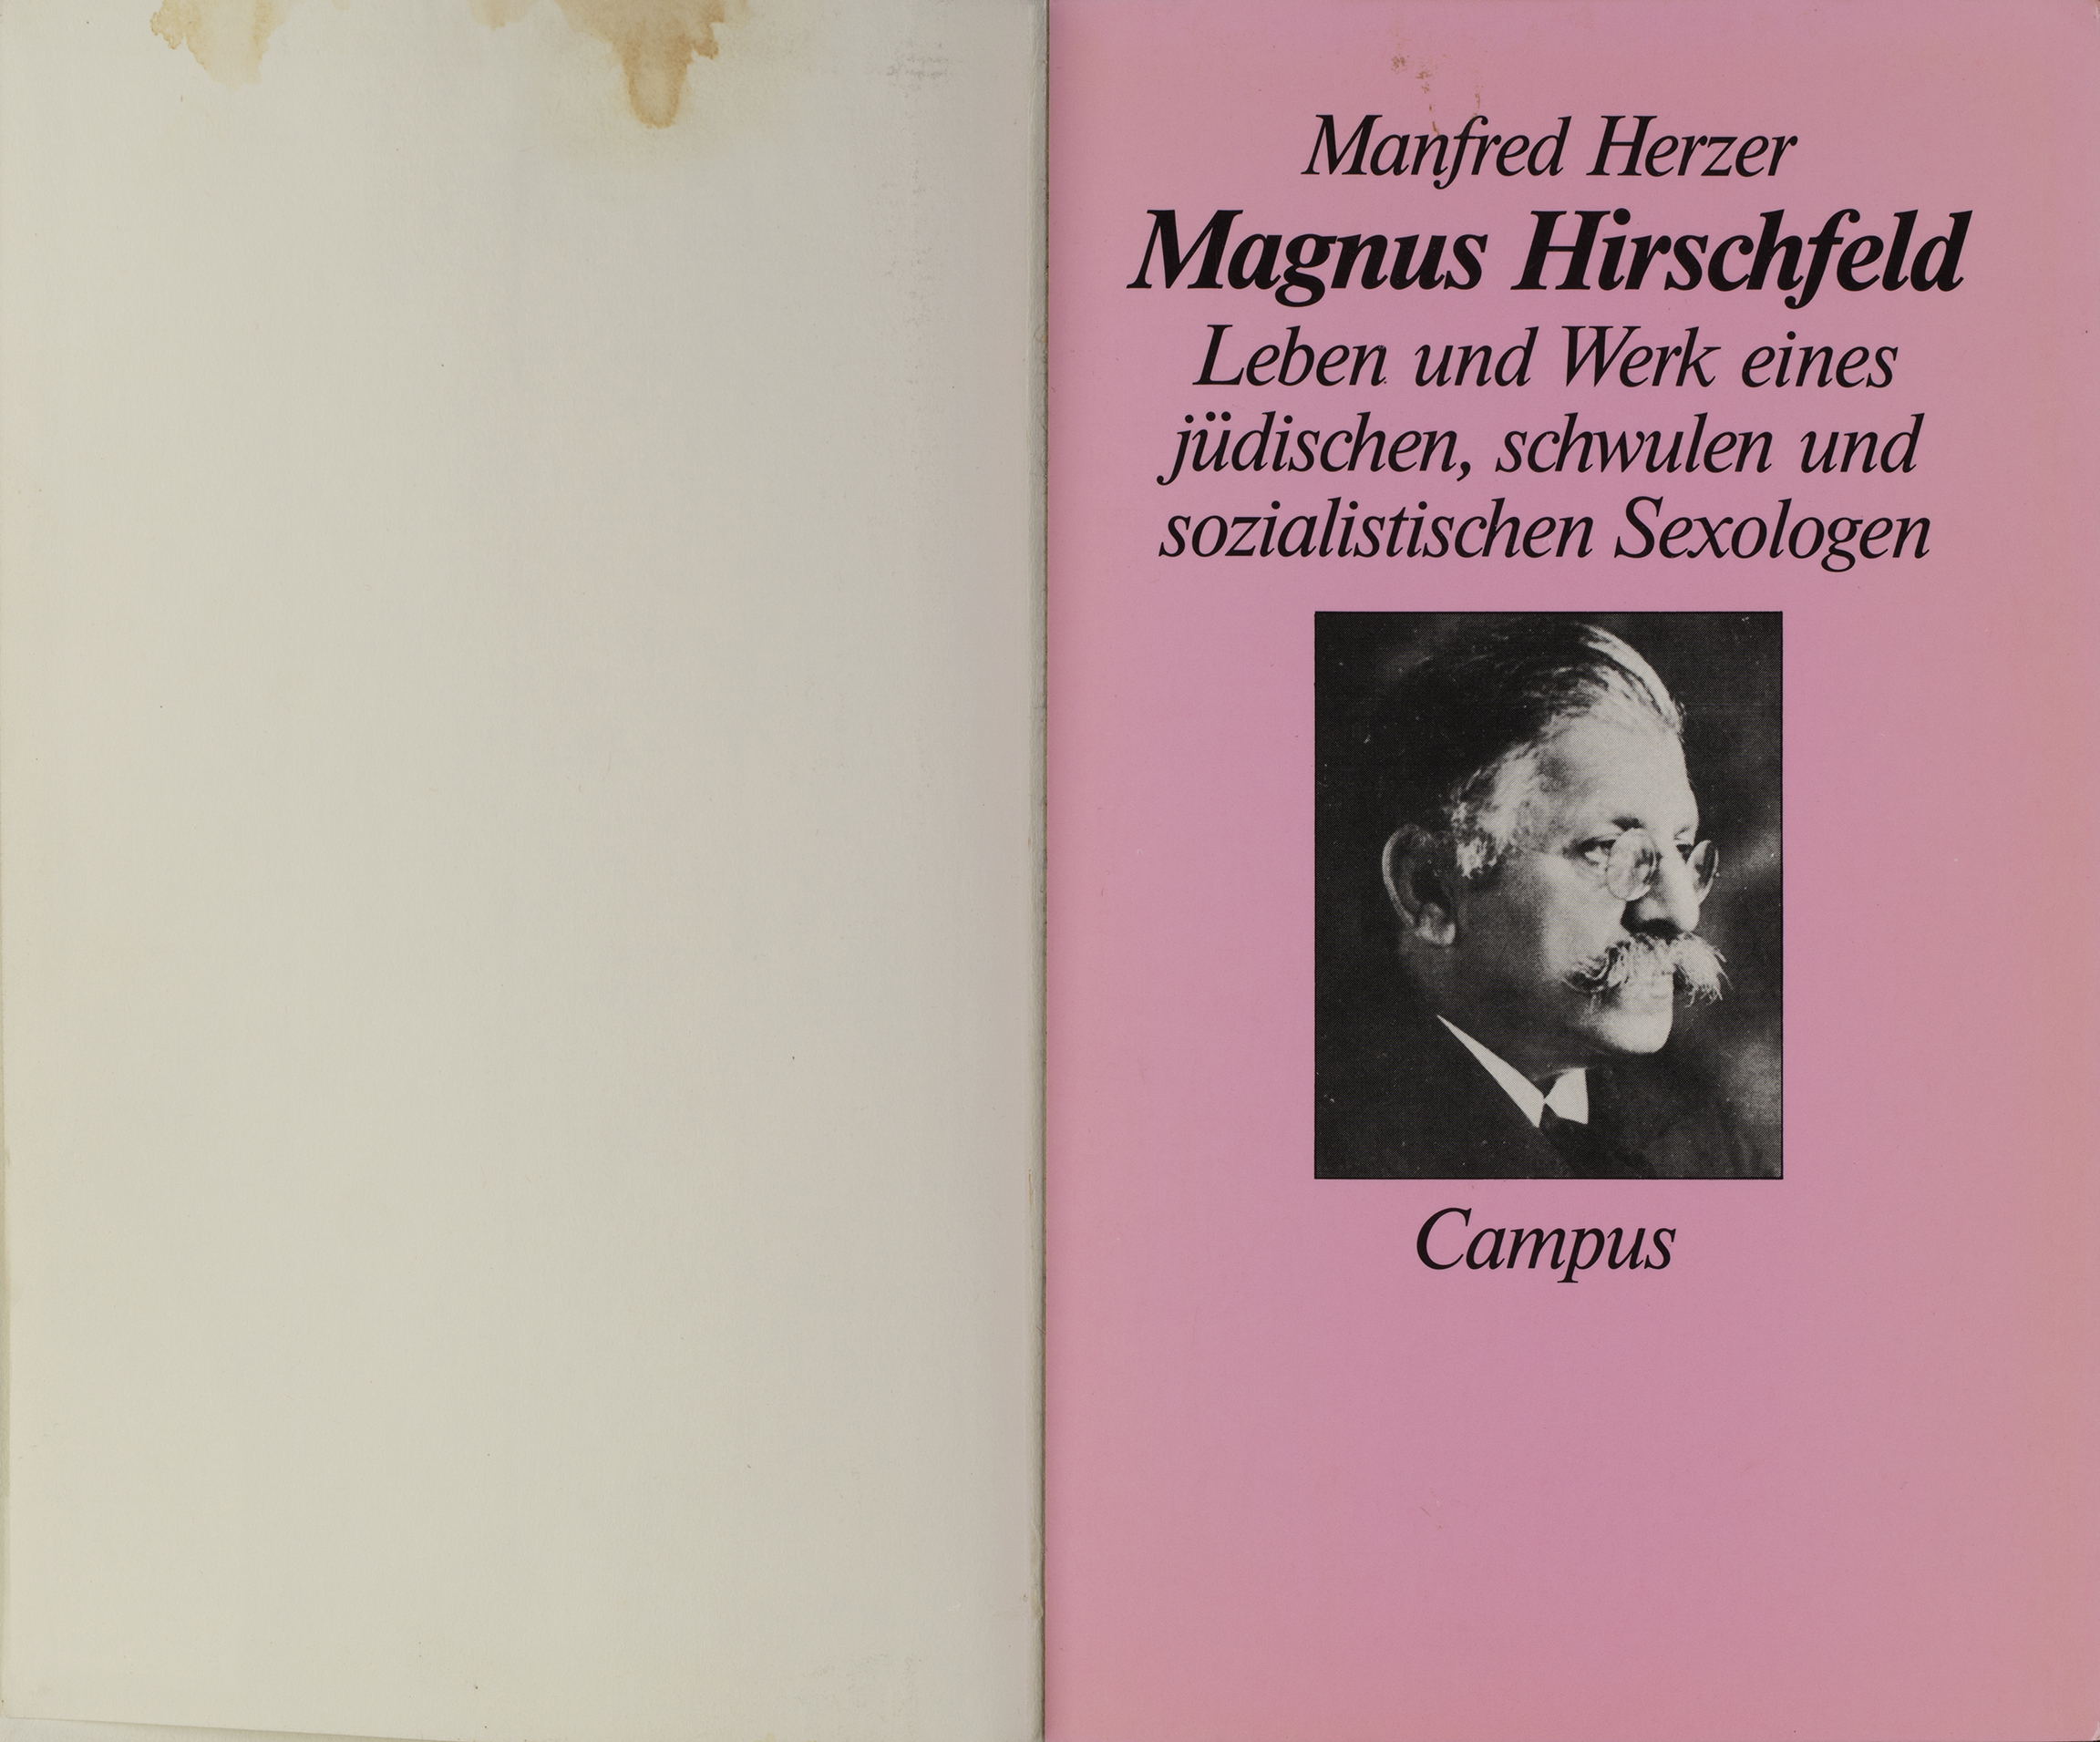 Manfred Herzer. Magnus Hirschfeld. Leben und Werk eines jüdischen, schwulen und sozialistischen Sexologen. Frankfurt a.M.: Campus, 1992. Signatur: 1 A 195685